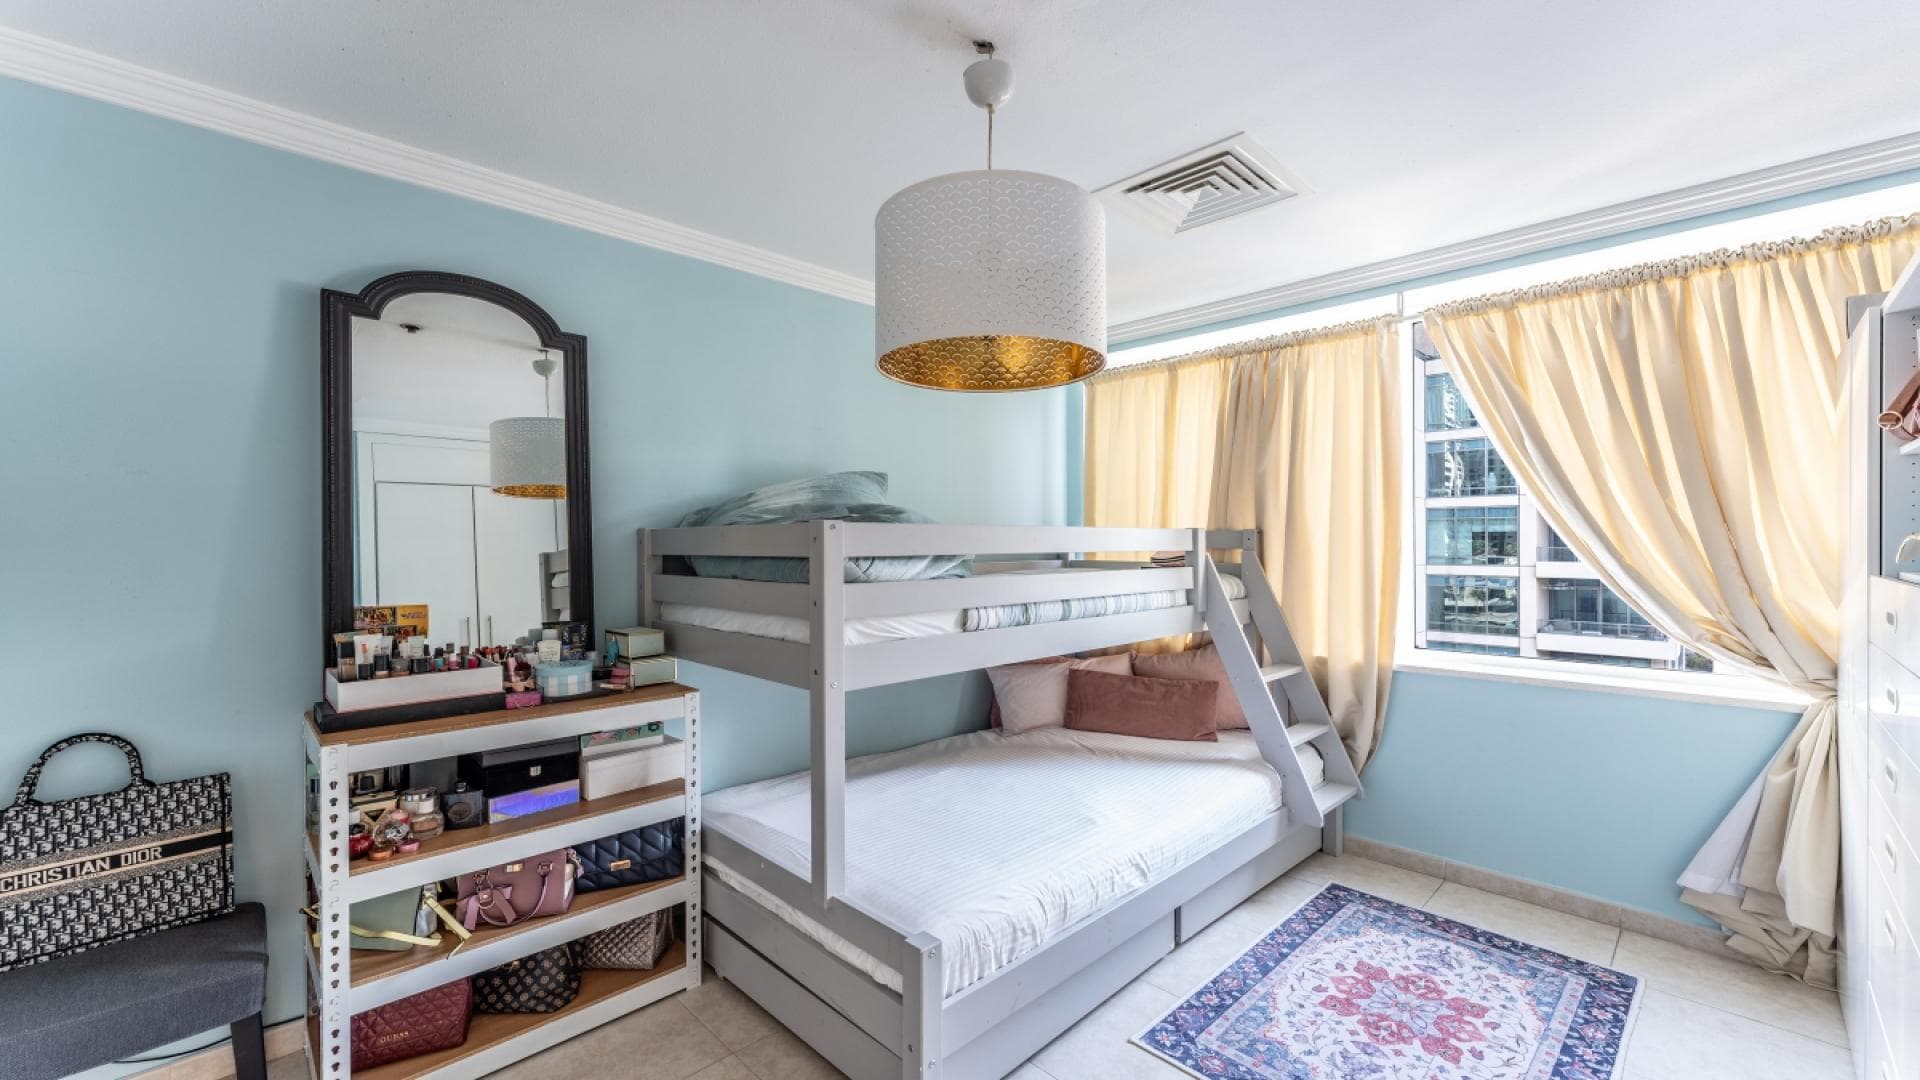 4 Bedroom Apartment For Rent Al Thamam 33 Lp38759 94087e59f47f780.jpg